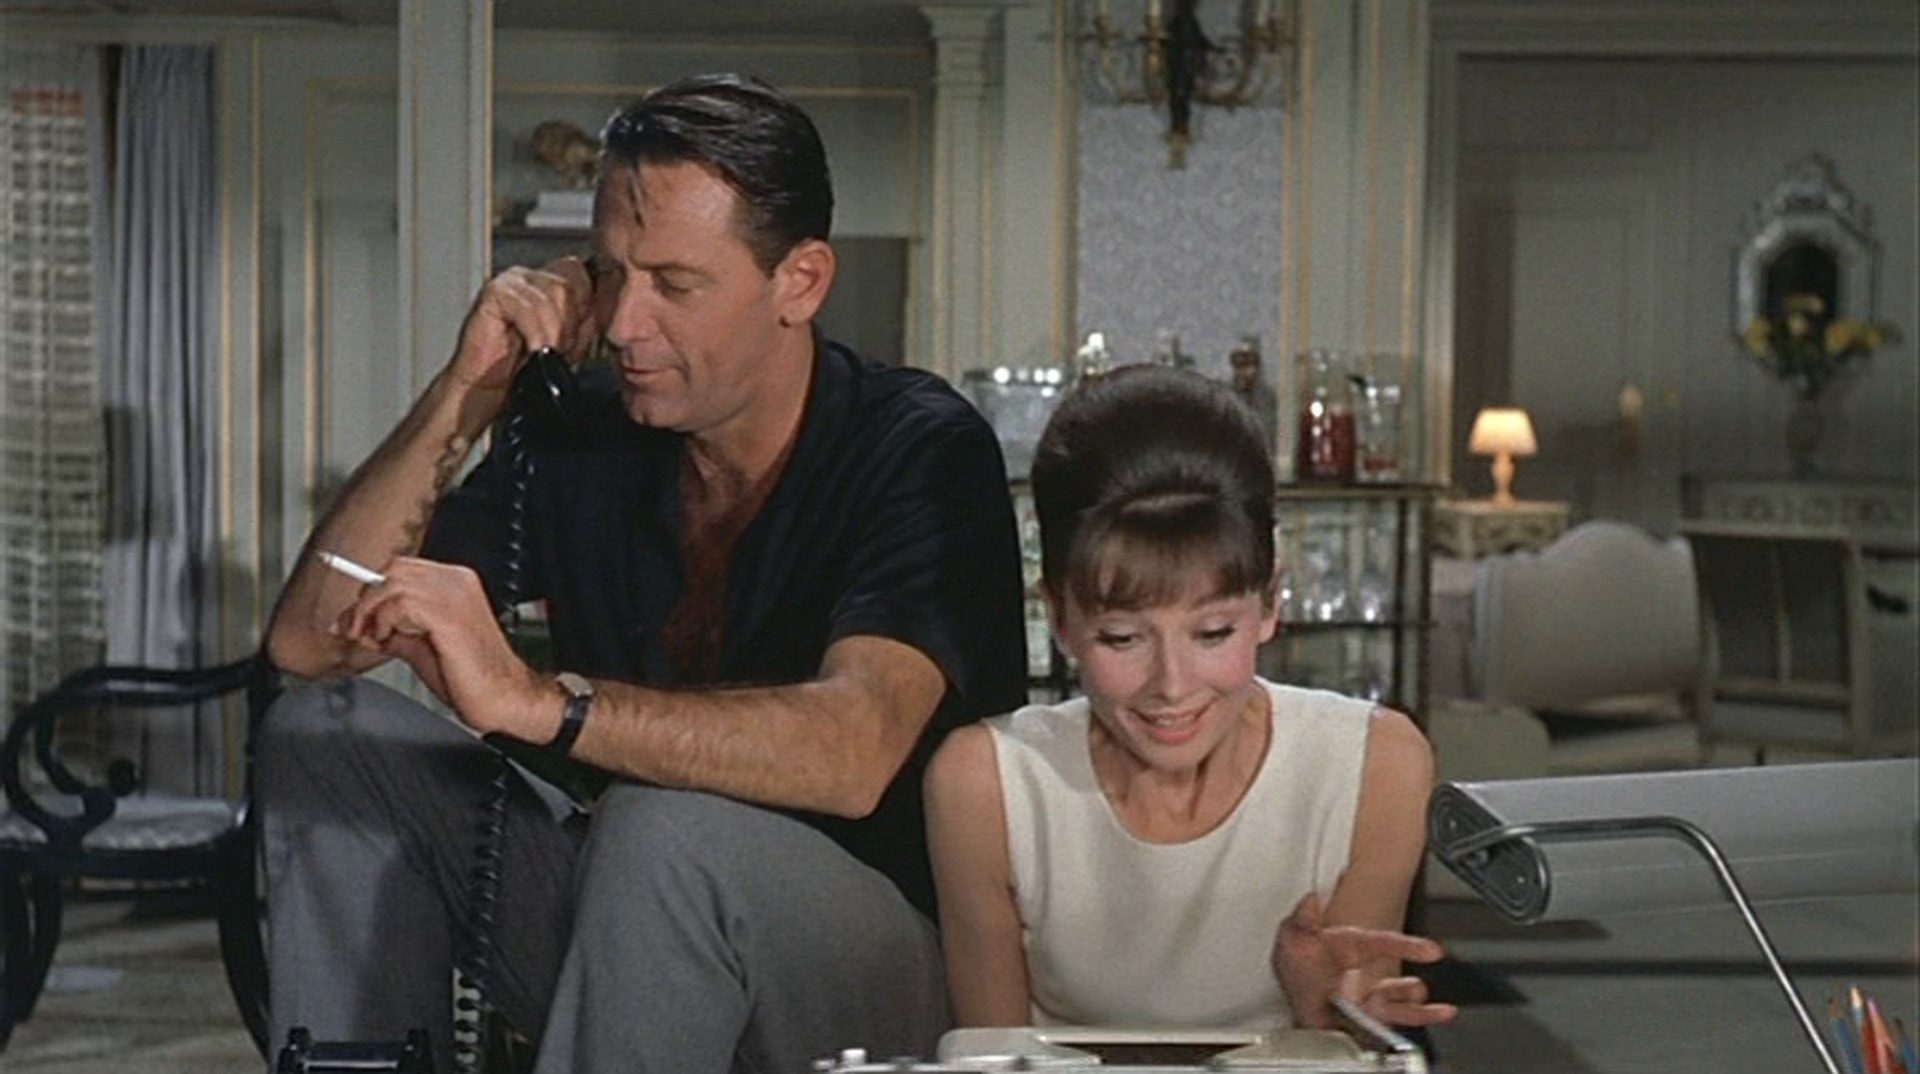 William Holden als legerer Drehbuchautor mit Zigarette in der Hand und Telefonhörer am Ohr in seinem Hotelzimmer; neben ihm sitzt Audrey Hepburn als Sekretärin an der Schreibmaschine; er sieht gelassen aus, sie enthusiastisch.